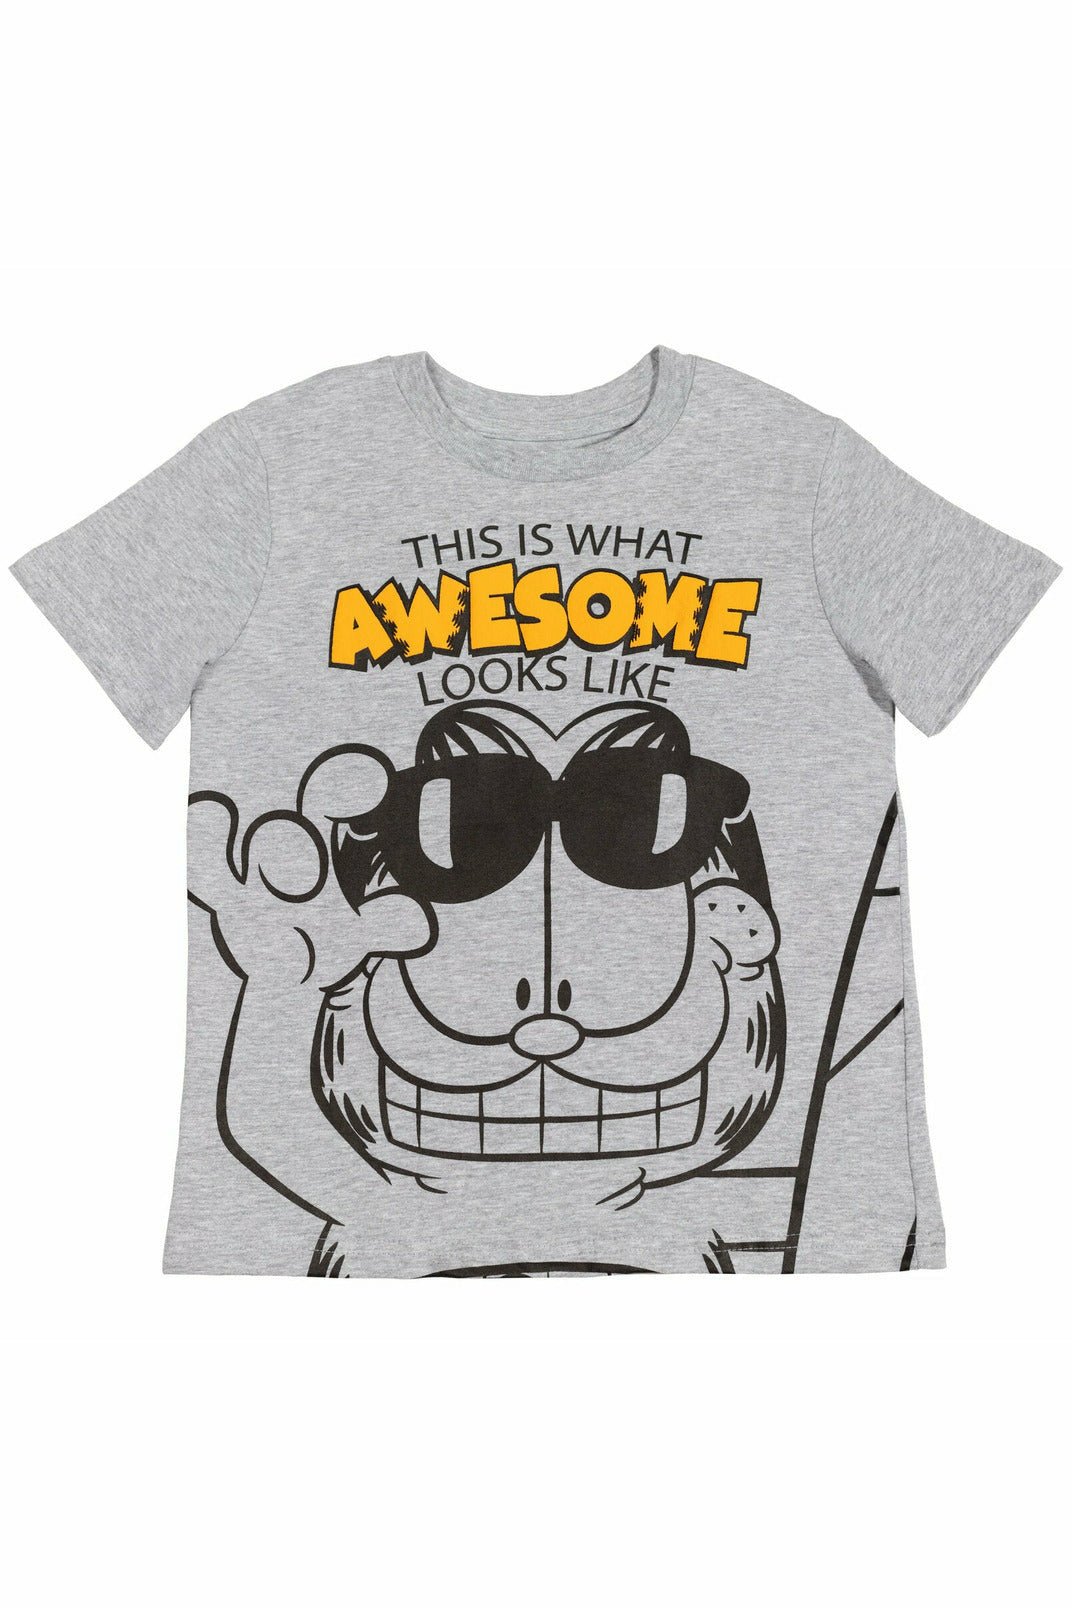 Garfield 3 Pack Graphic T-Shirt - imagikids